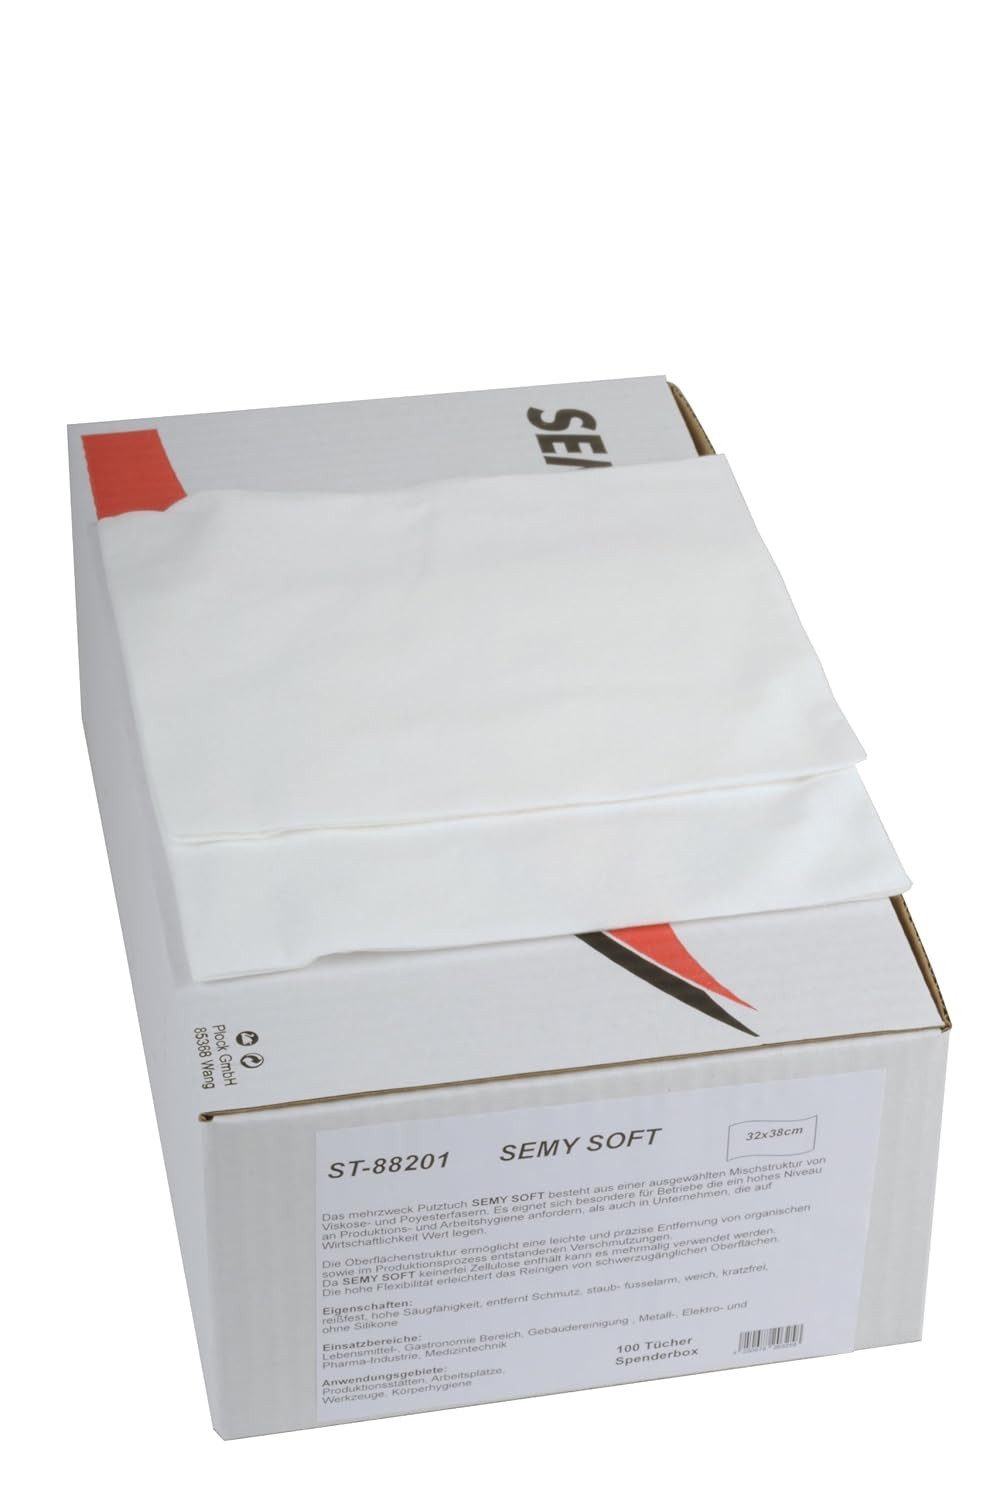 SemyTop Spezial-Putztuch in Spenderbox, weiß, 32 x 38 cm, 100 Tücher per Box Reinigungstücher (1 Spenderbox á 100 Tücher, lösungsmittelbeständig, reißfest, saugfähig, weich, silikonfrei)